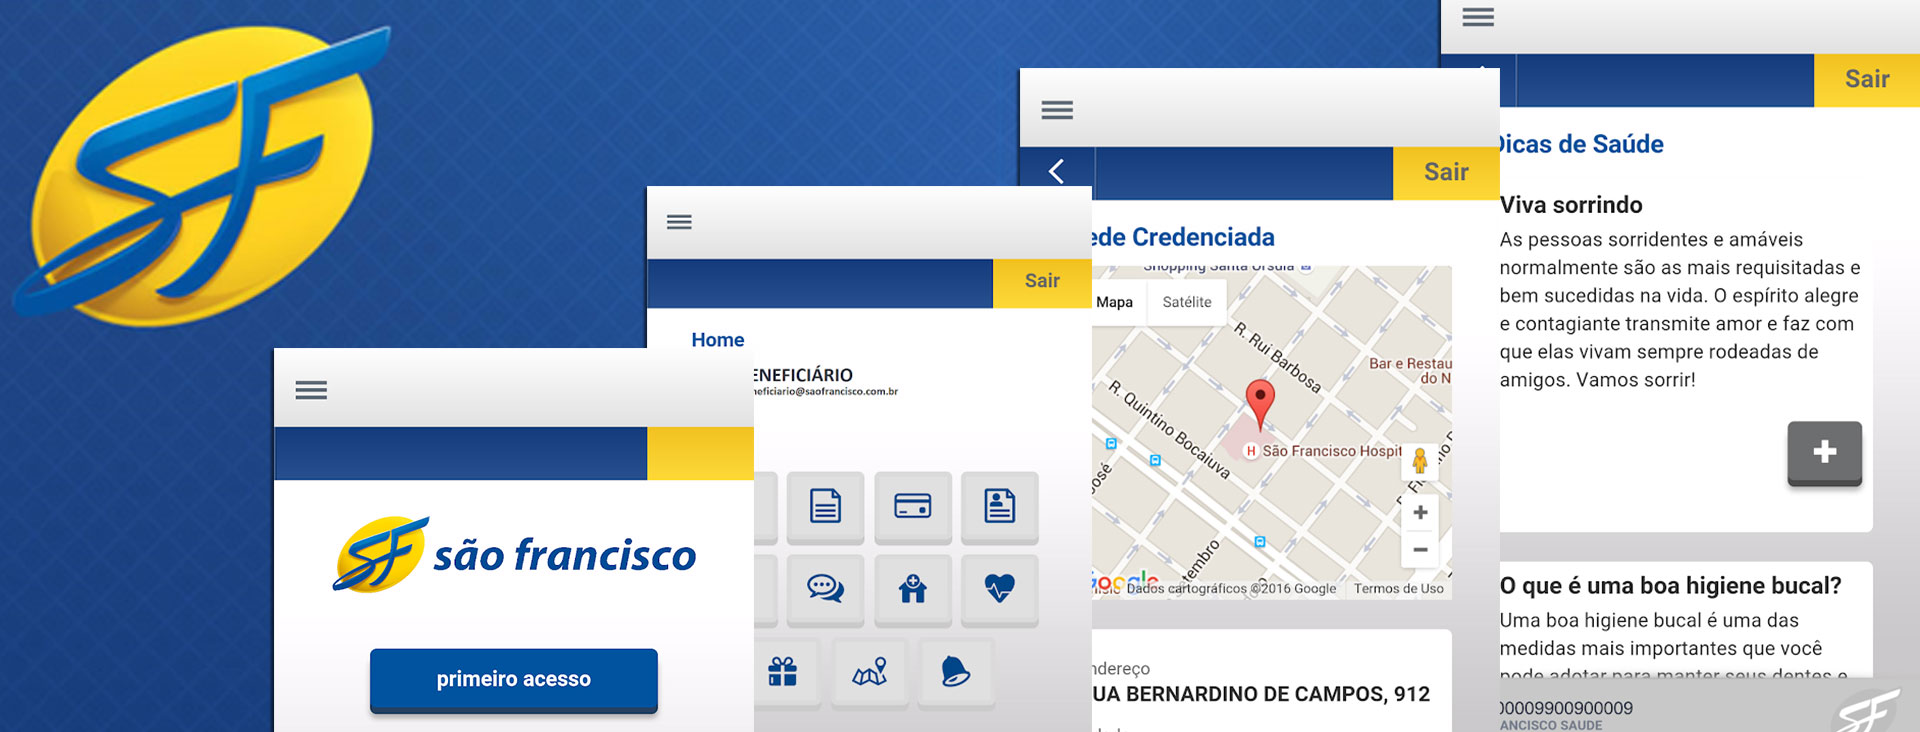 Case São Francisco Customers App